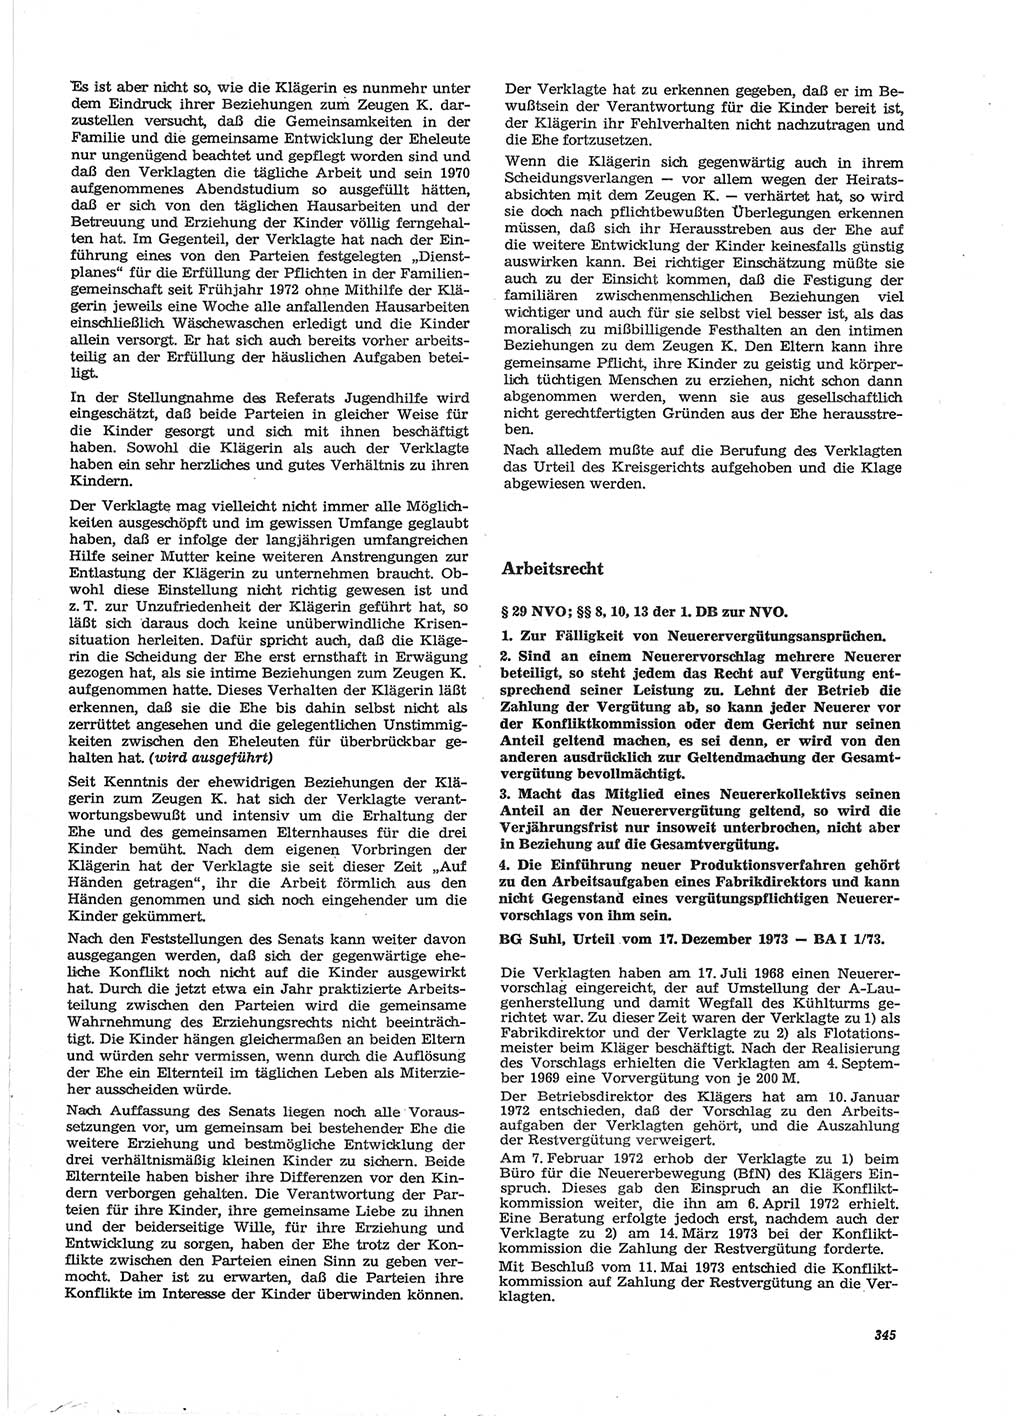 Neue Justiz (NJ), Zeitschrift für Recht und Rechtswissenschaft [Deutsche Demokratische Republik (DDR)], 28. Jahrgang 1974, Seite 345 (NJ DDR 1974, S. 345)